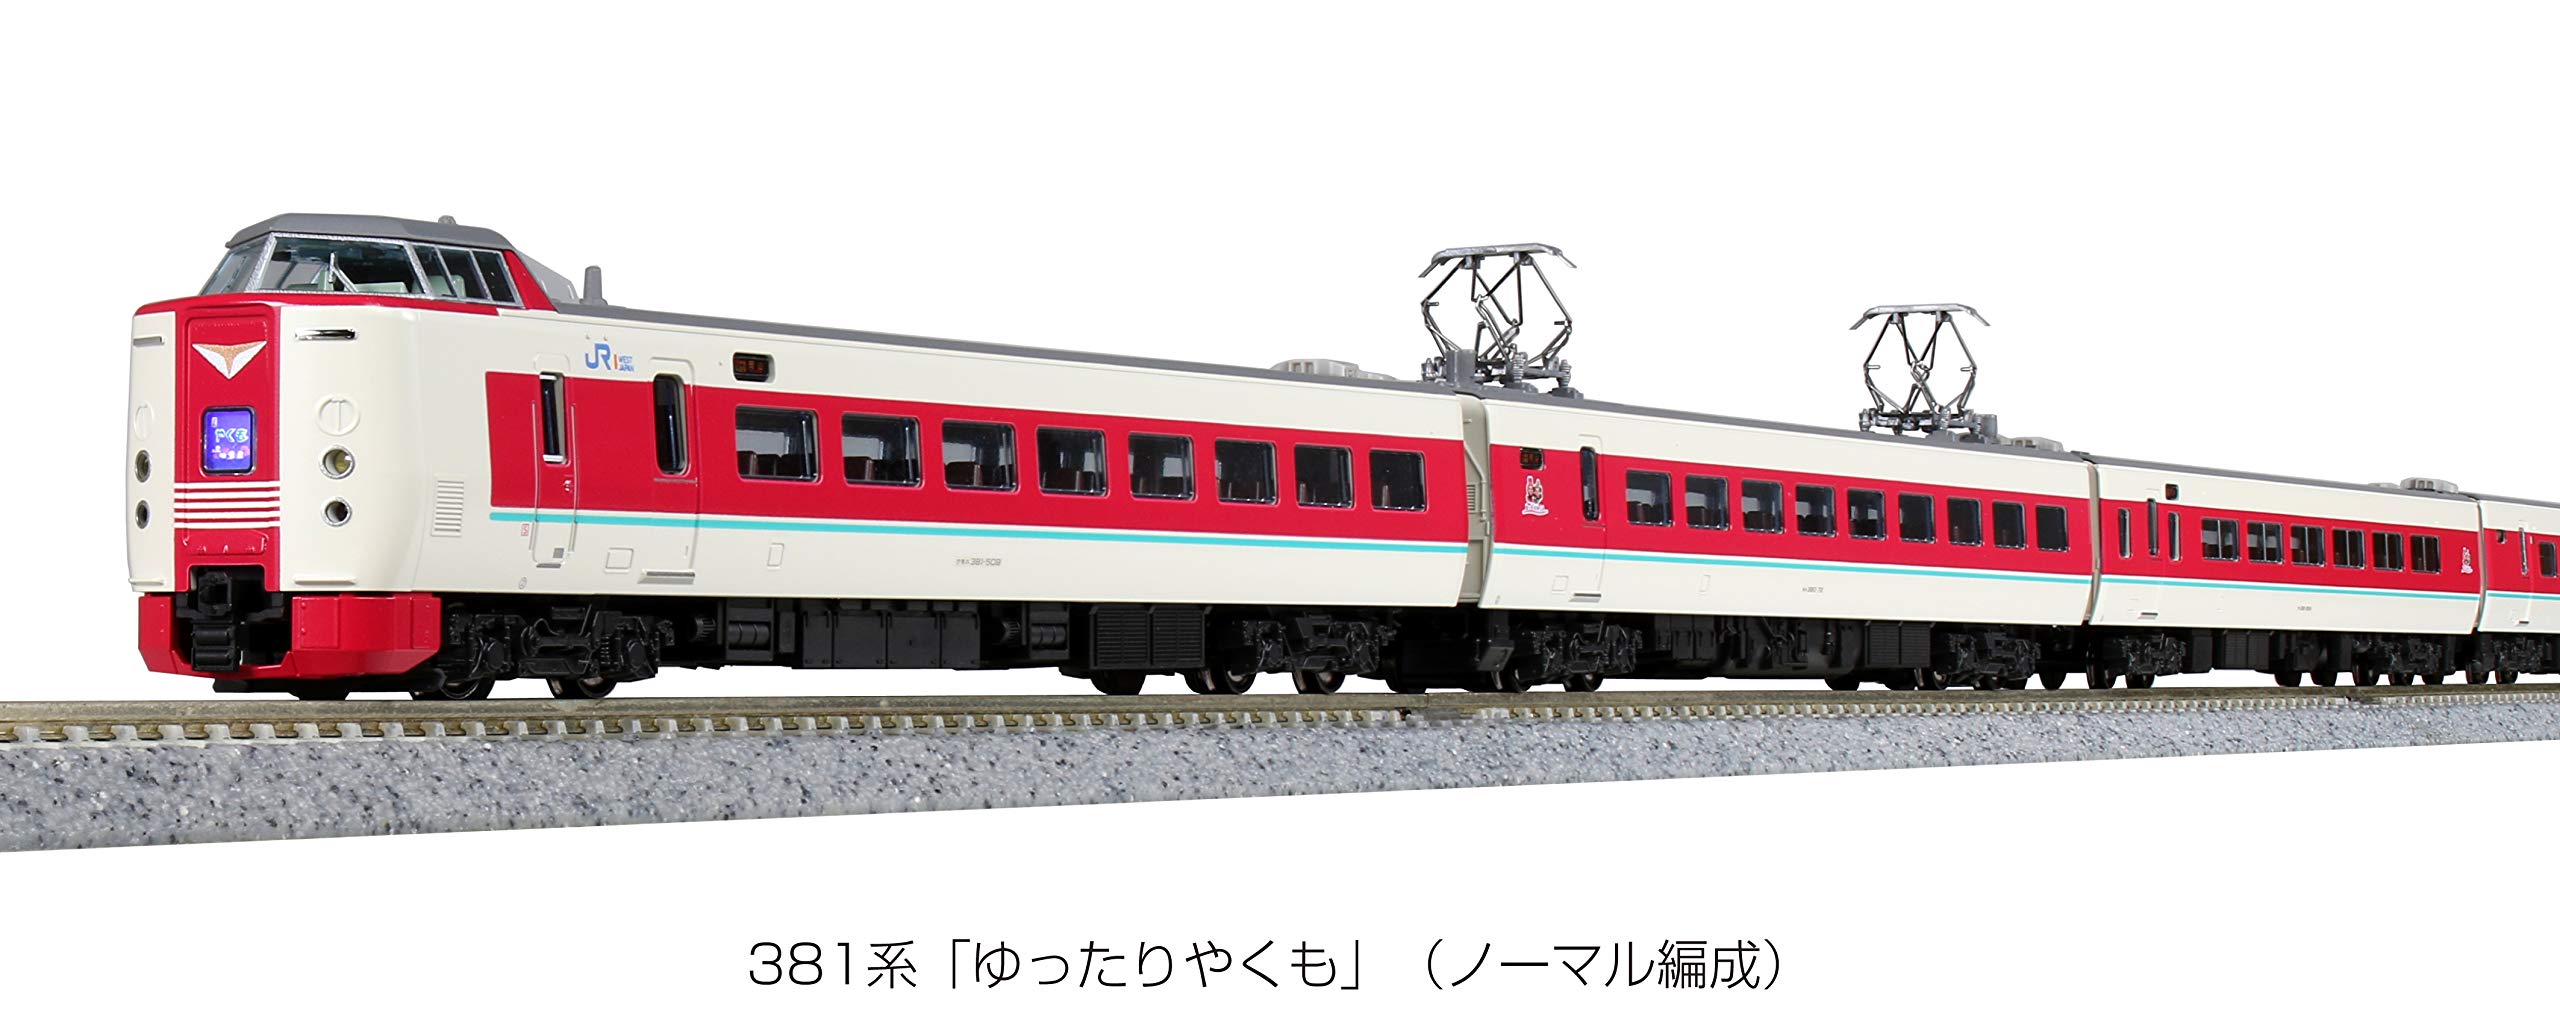 Kato N Gauge 381 Series Yukuyaku Yakumo 7-Car Set 10-1452 Model Train